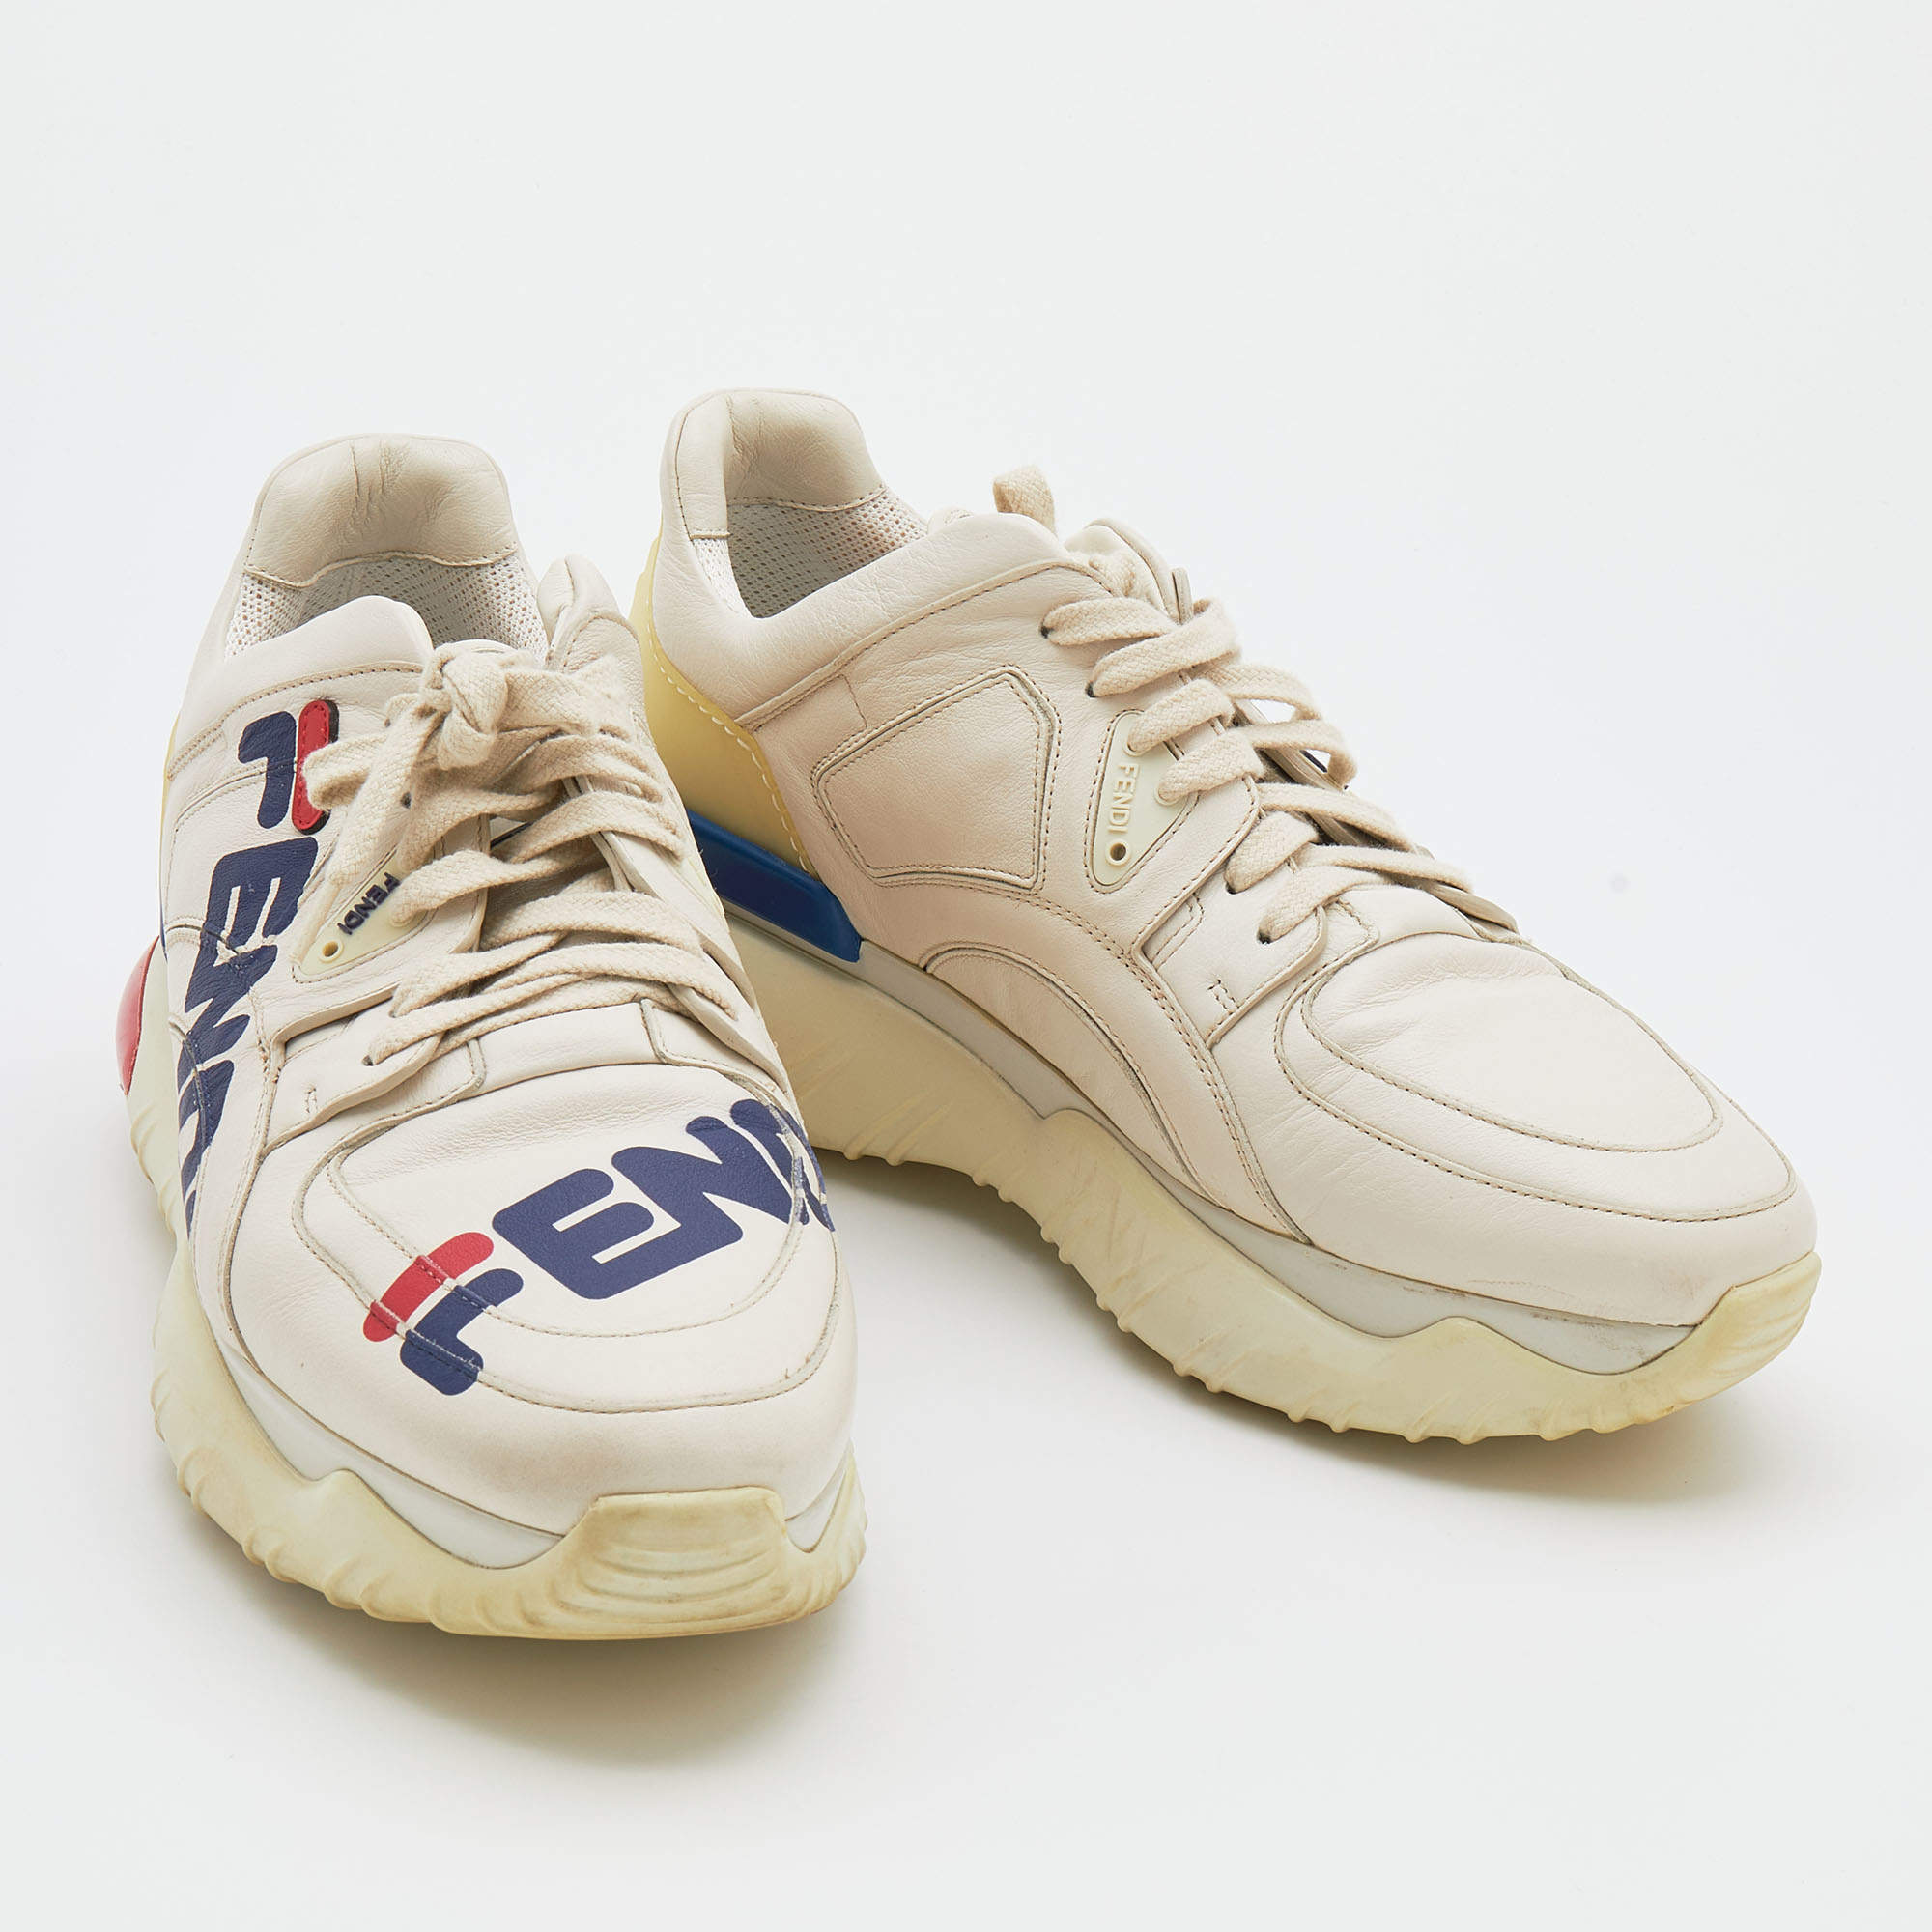 Fendi Mania Leather Sneakers In White | ModeSens | Sneakers men fashion,  Sneakers fashion, Fendi shoes